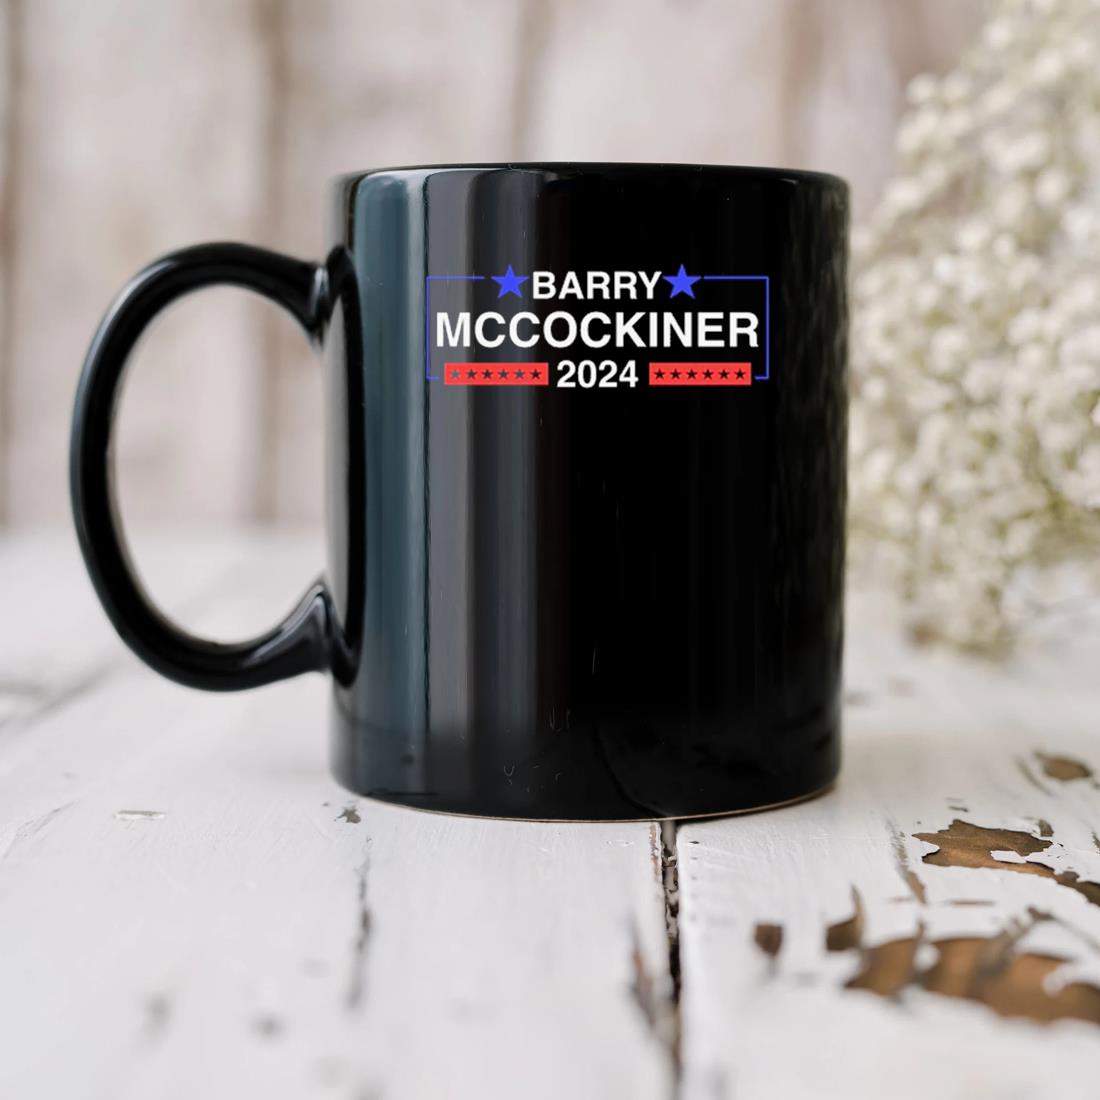 Barry Mccockiner 2024 Mug